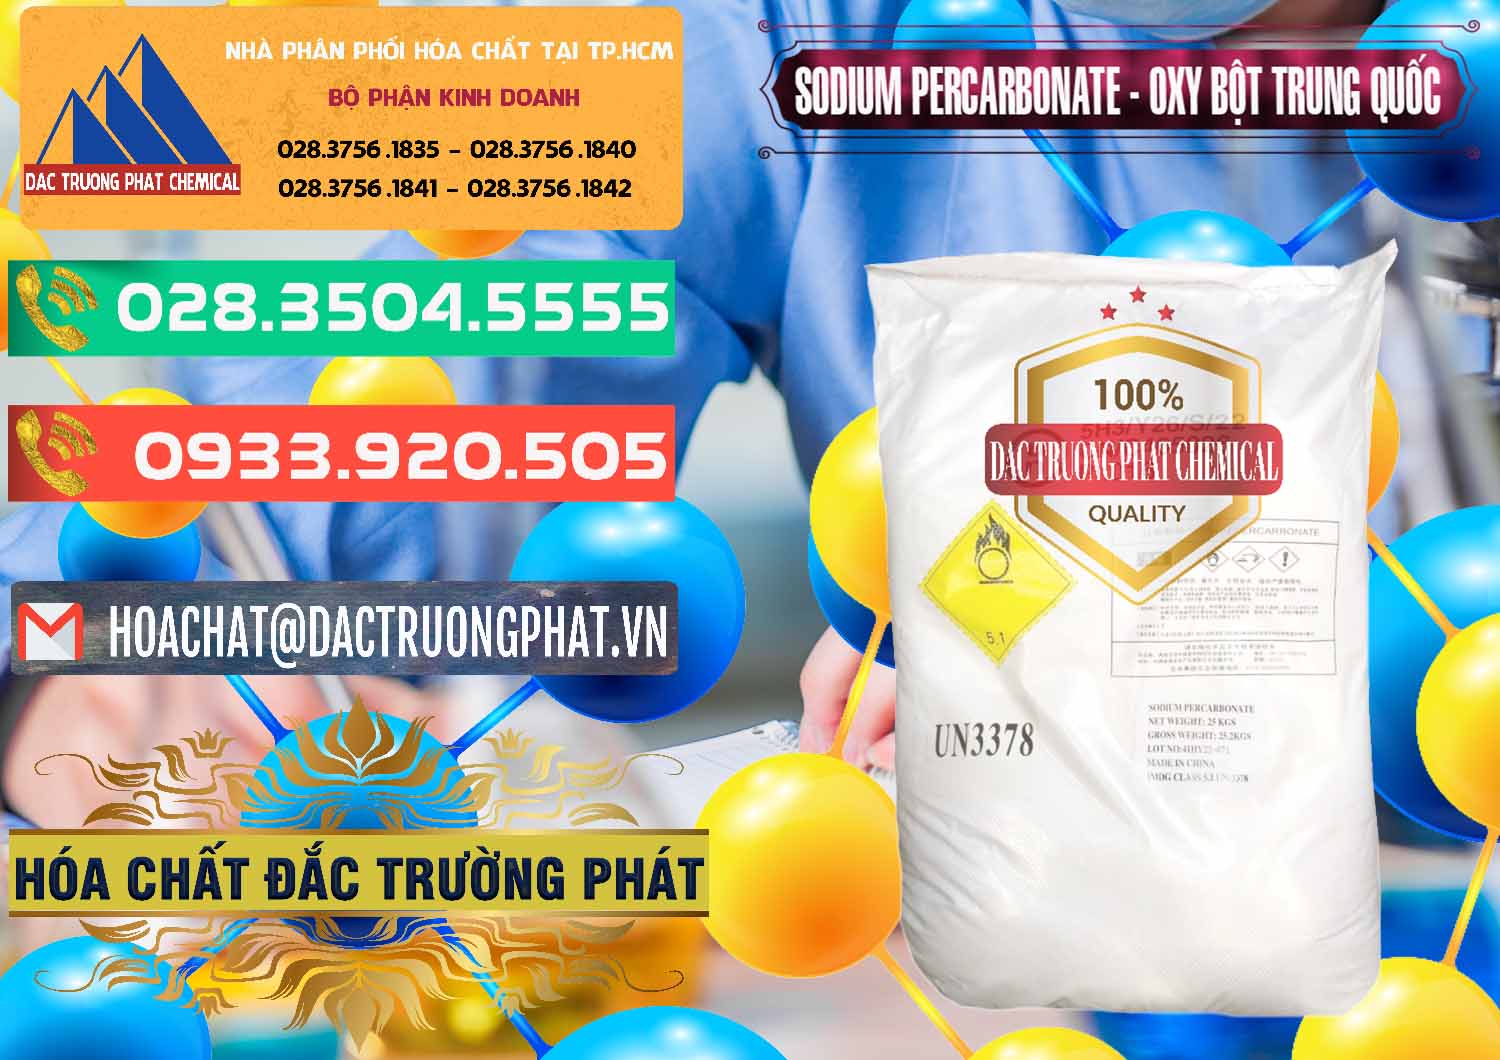 Chuyên phân phối - bán Sodium Percarbonate Dạng Bột Trung Quốc China - 0390 - Nơi cung cấp - phân phối hóa chất tại TP.HCM - congtyhoachat.com.vn